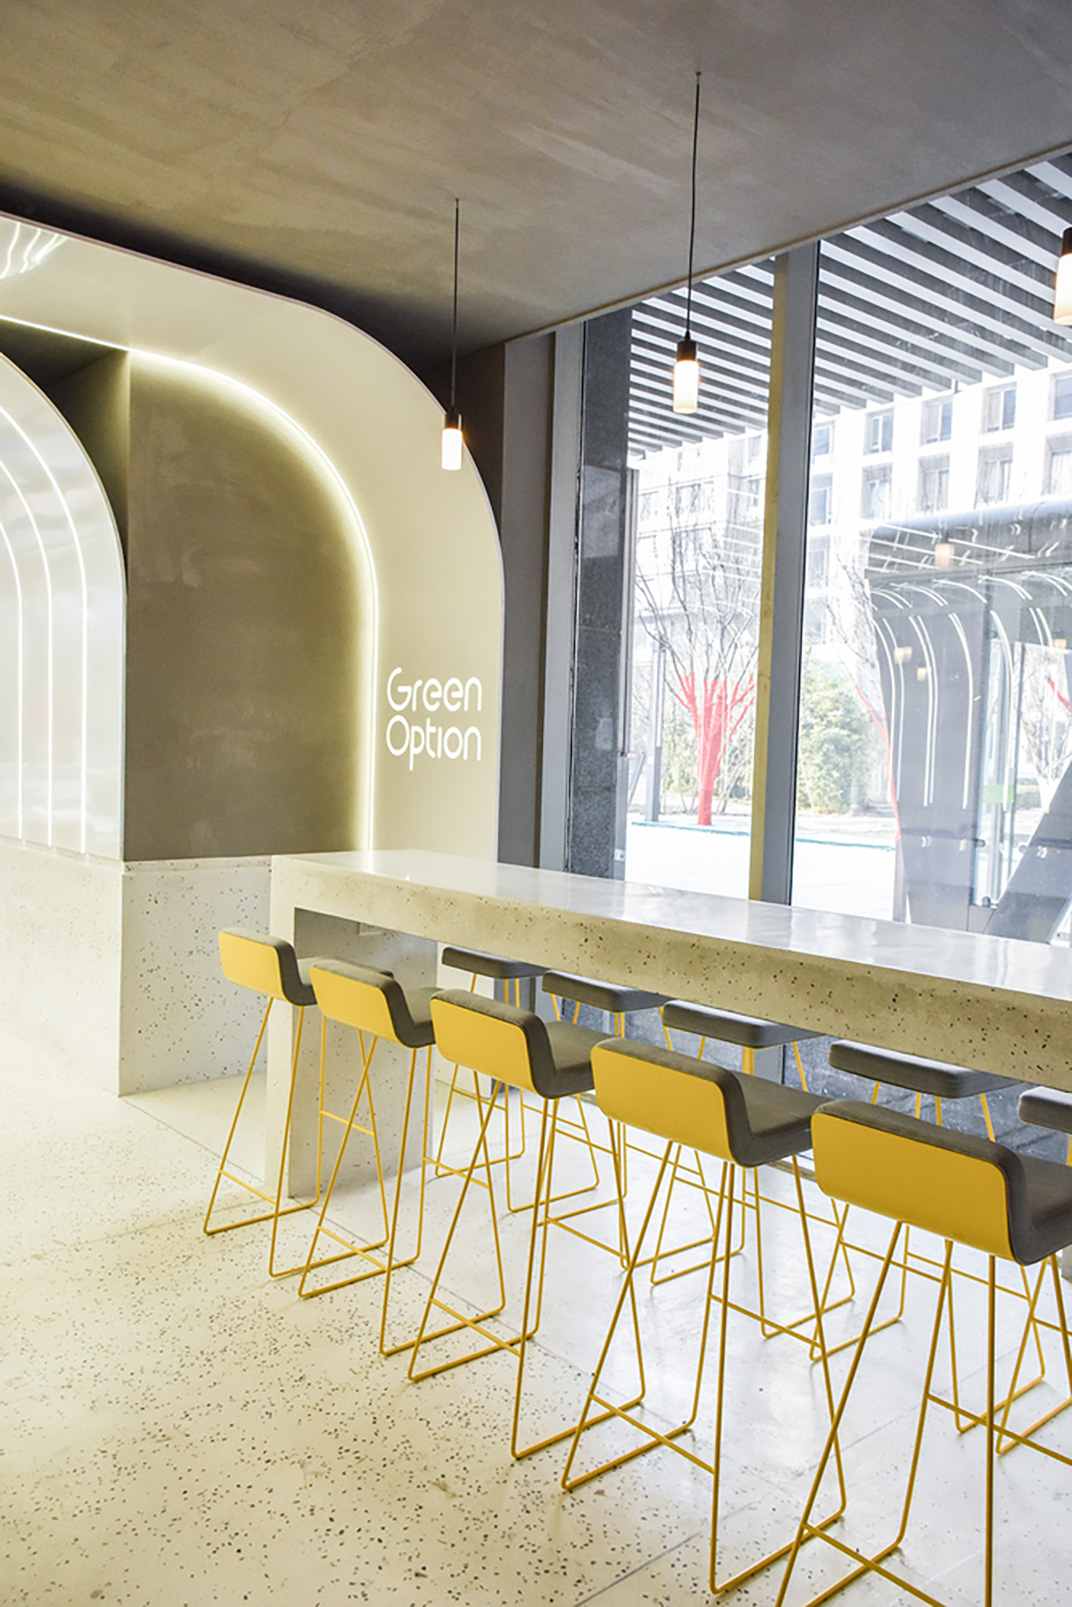 健康食品概念餐厅设计 头条计画 视觉餐饮 全球餐饮研究所 vi设计 空间设计 深圳 杭州 武汉 上海